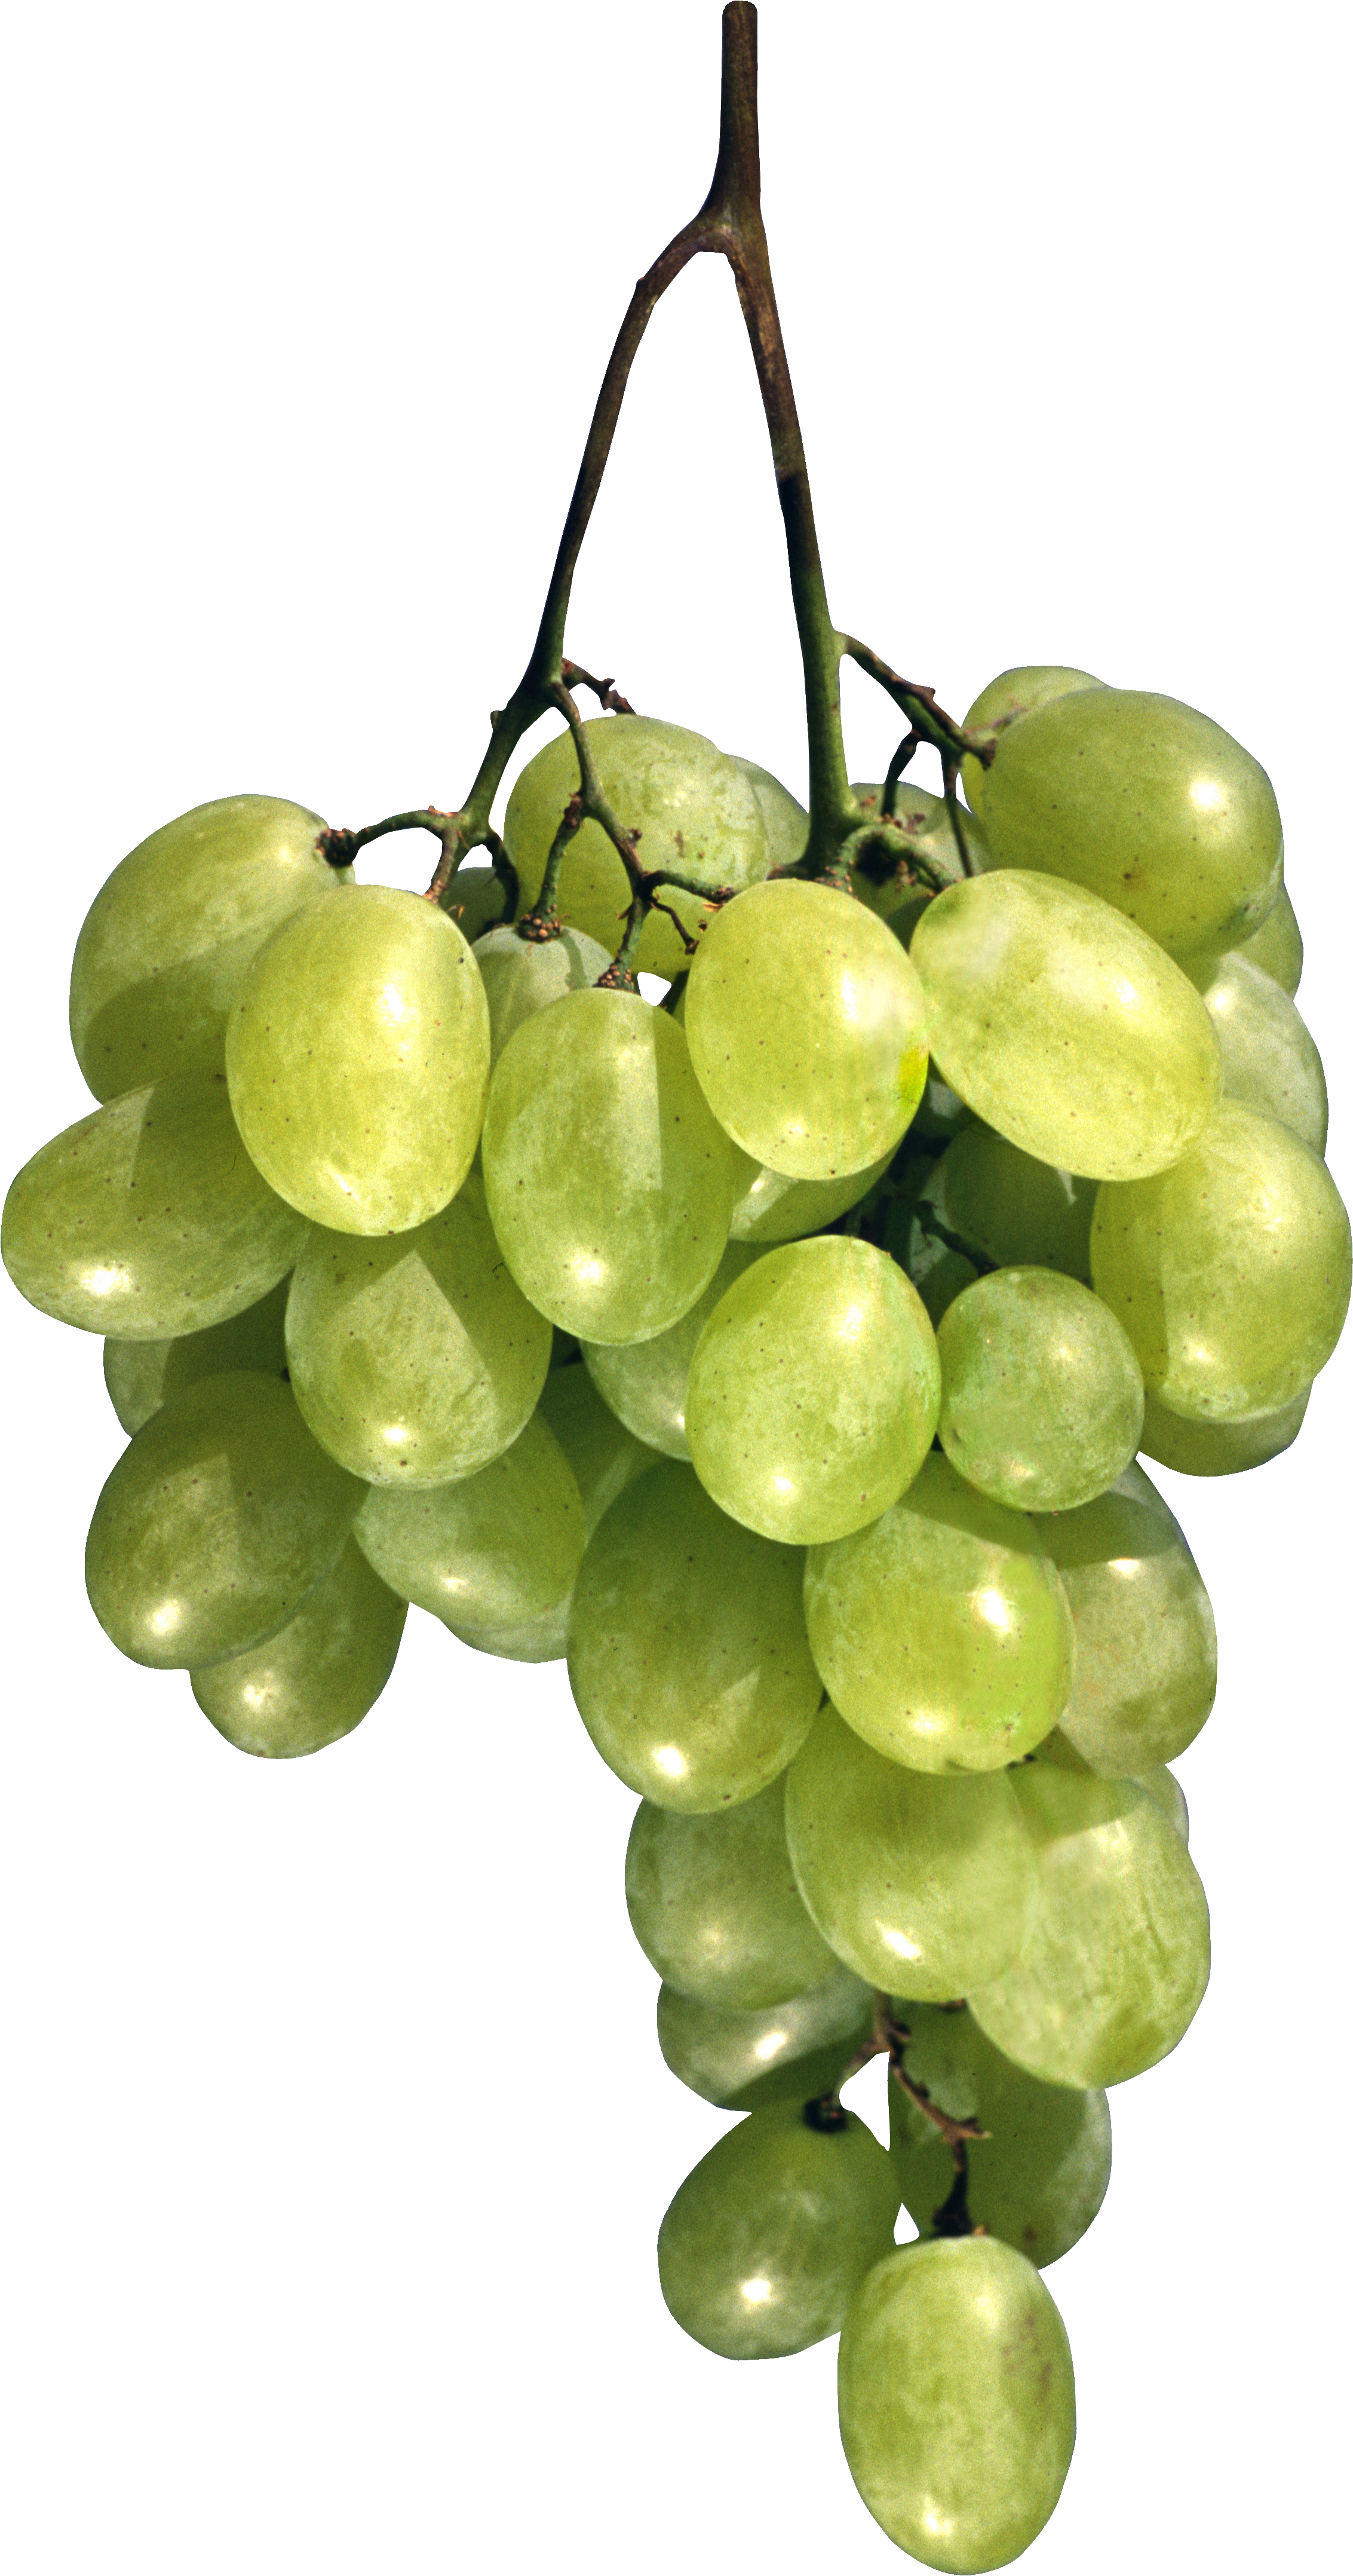 Uvas verdes